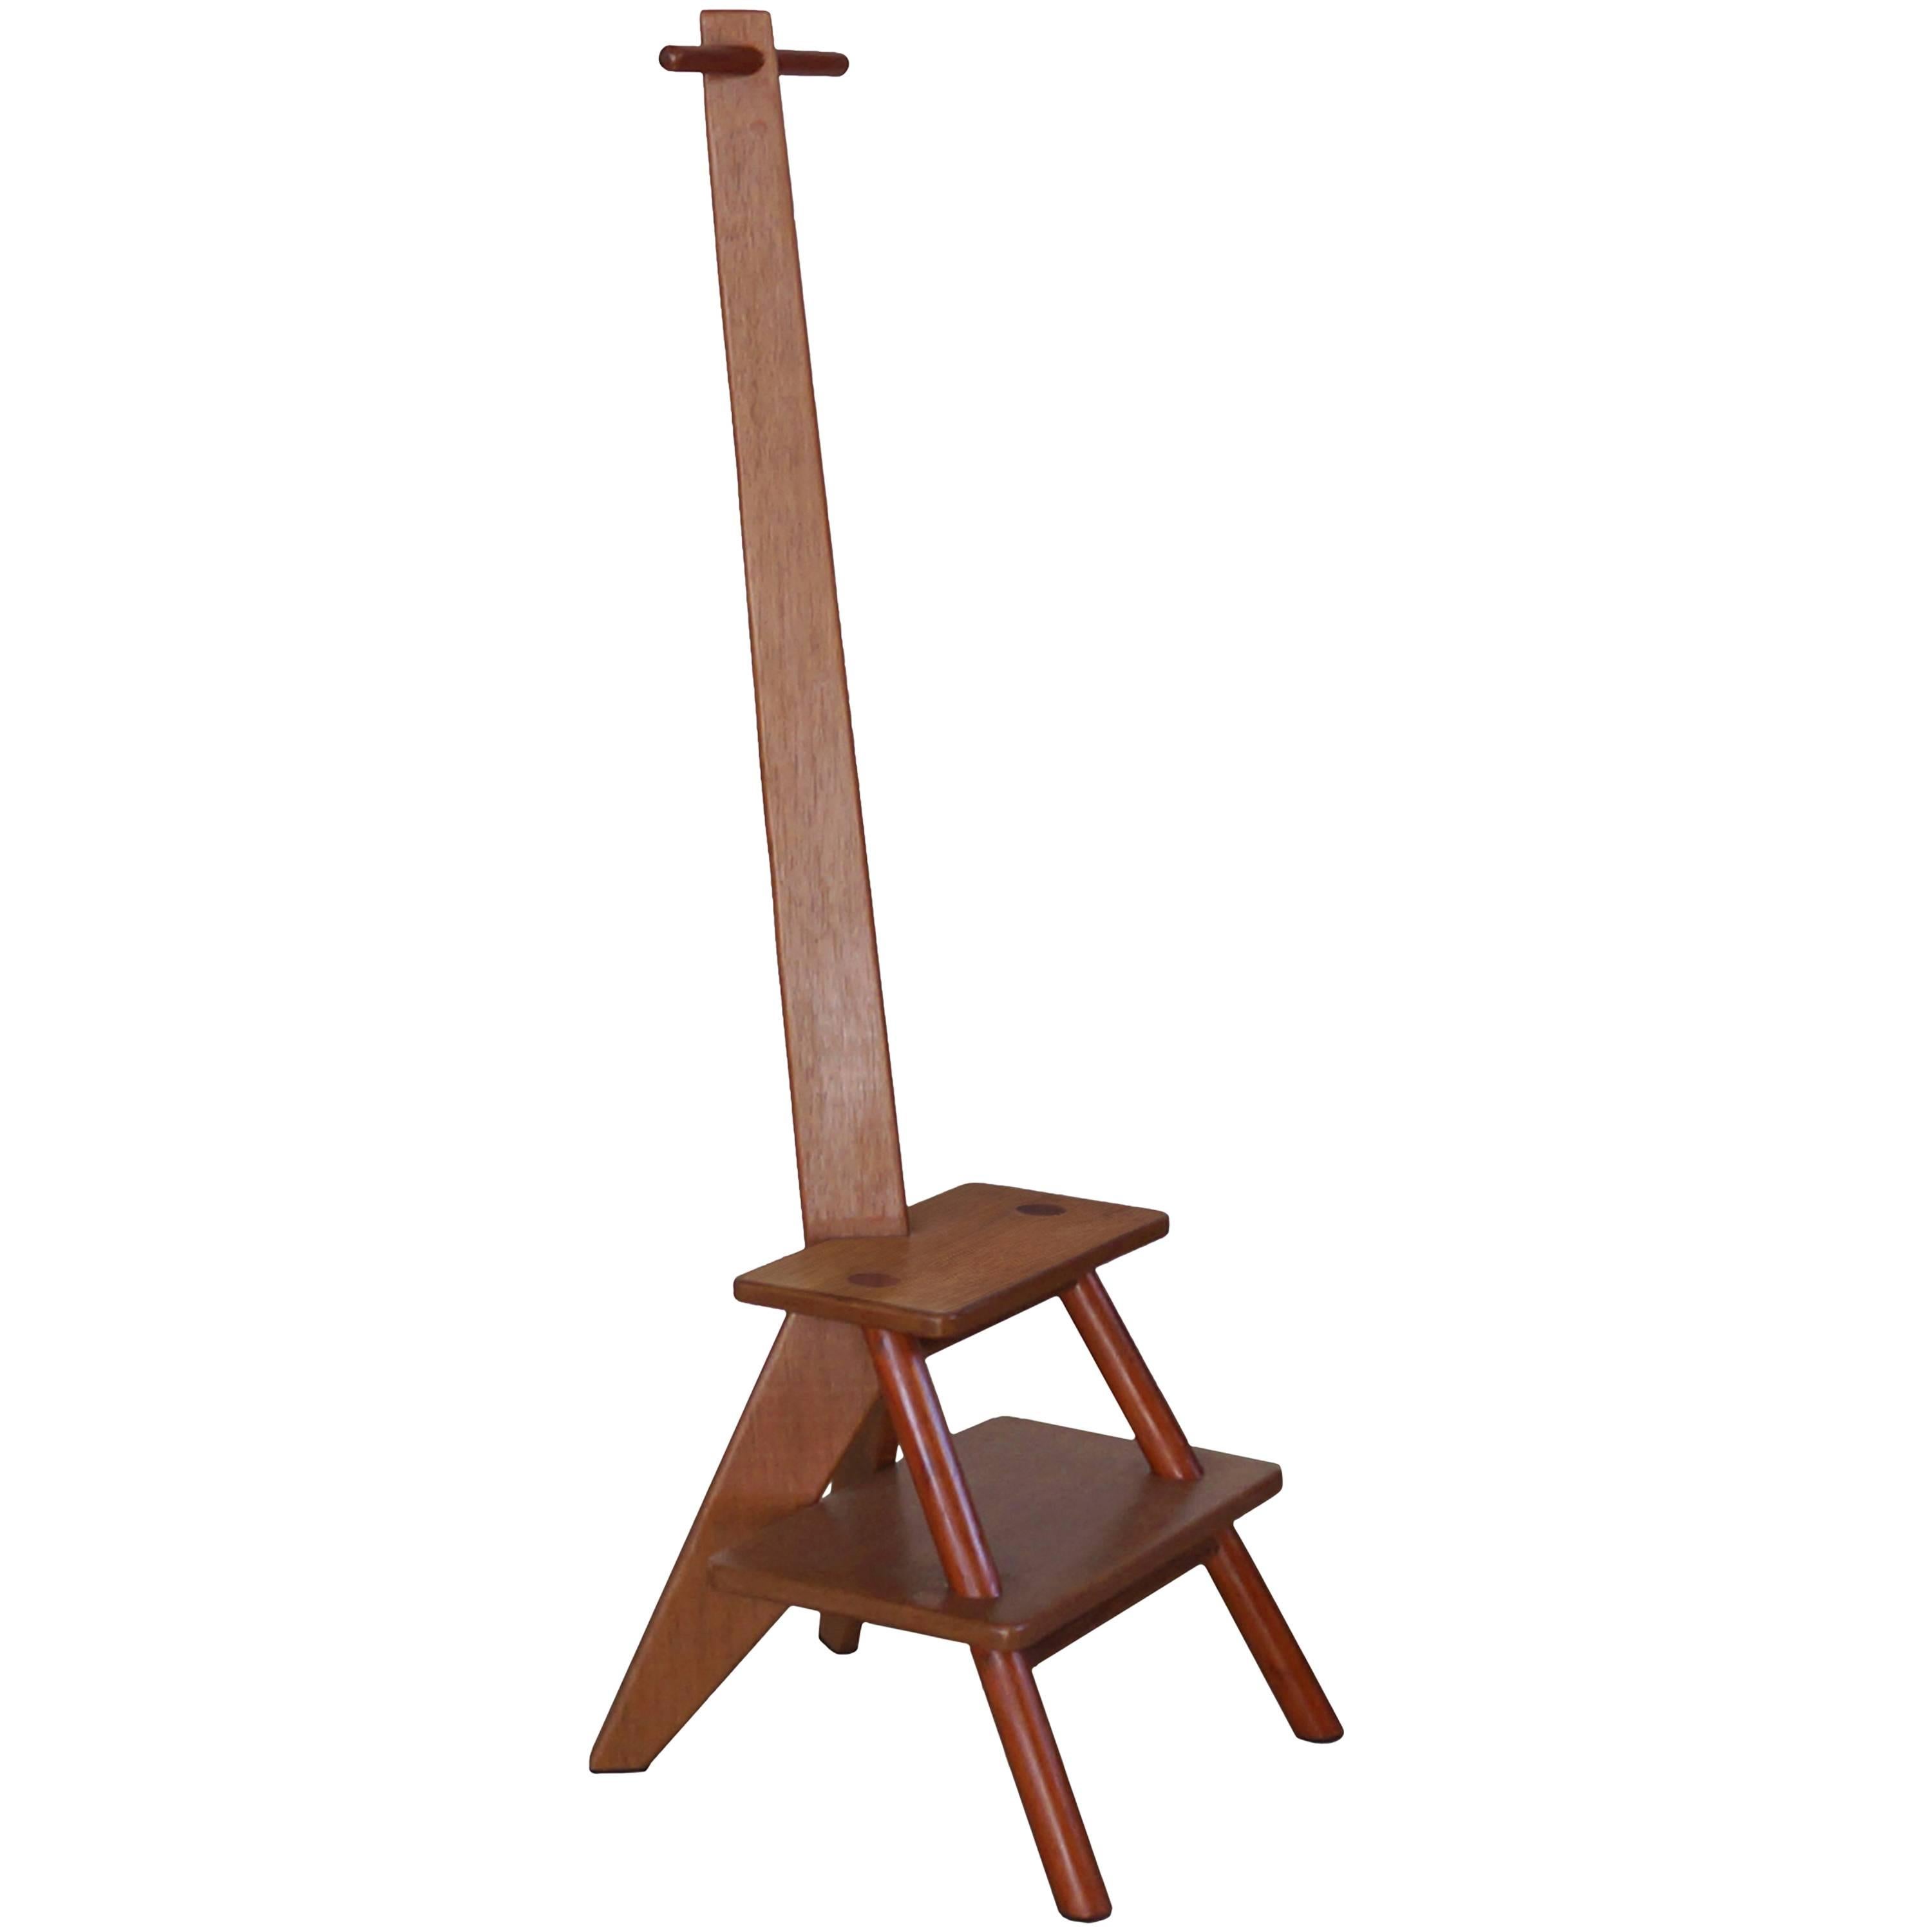 Girafa Ladder and Hanger in Hardwood, Brazilian Contemporary Design For Sale